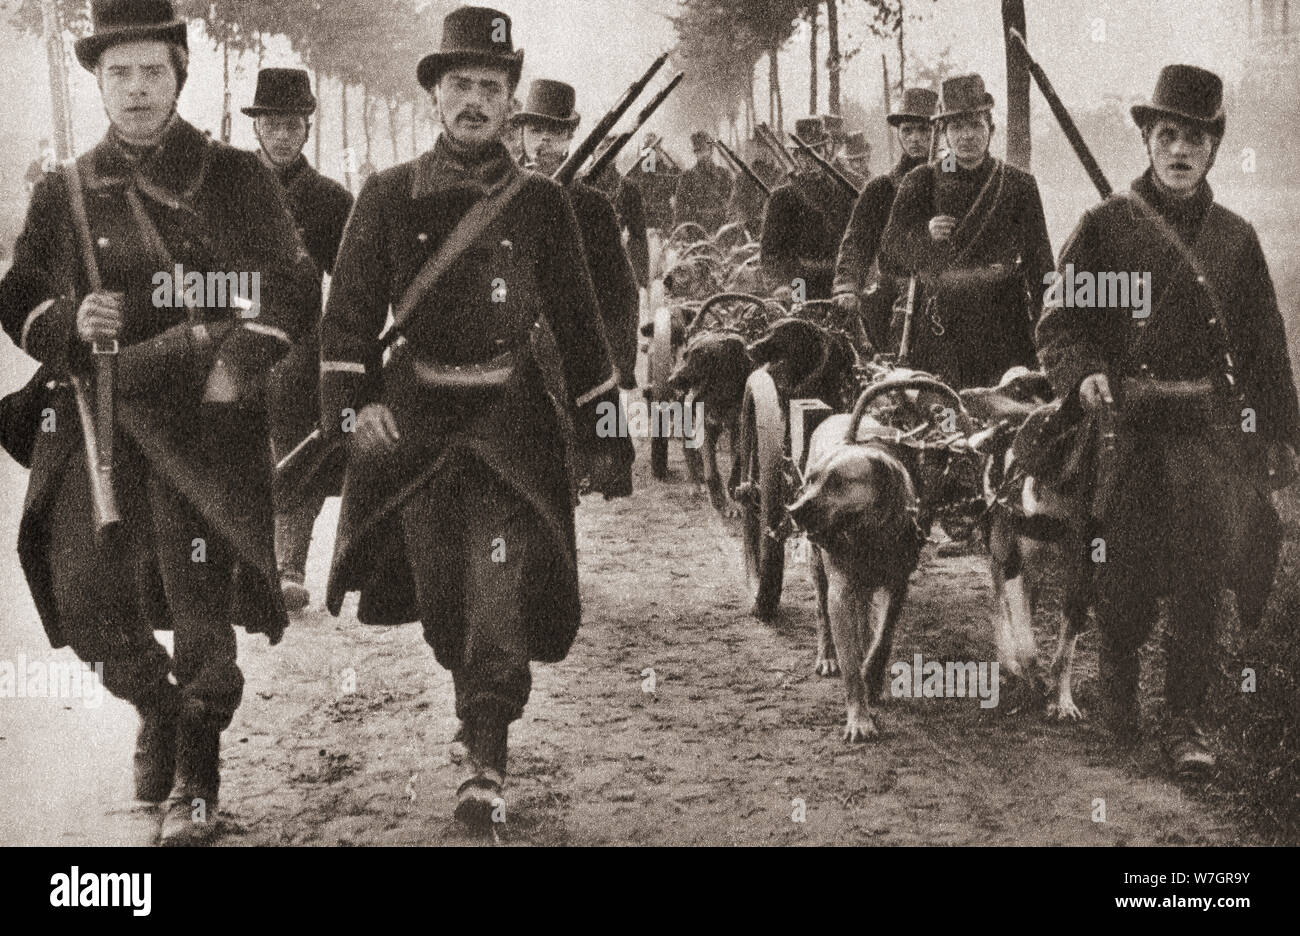 Hunde verwendet die Maschinengewehre der belgischen Armee während des ersten Weltkrieges zu ziehen. Aus dem Festzug des Jahrhunderts, veröffentlicht 1934. Stockfoto